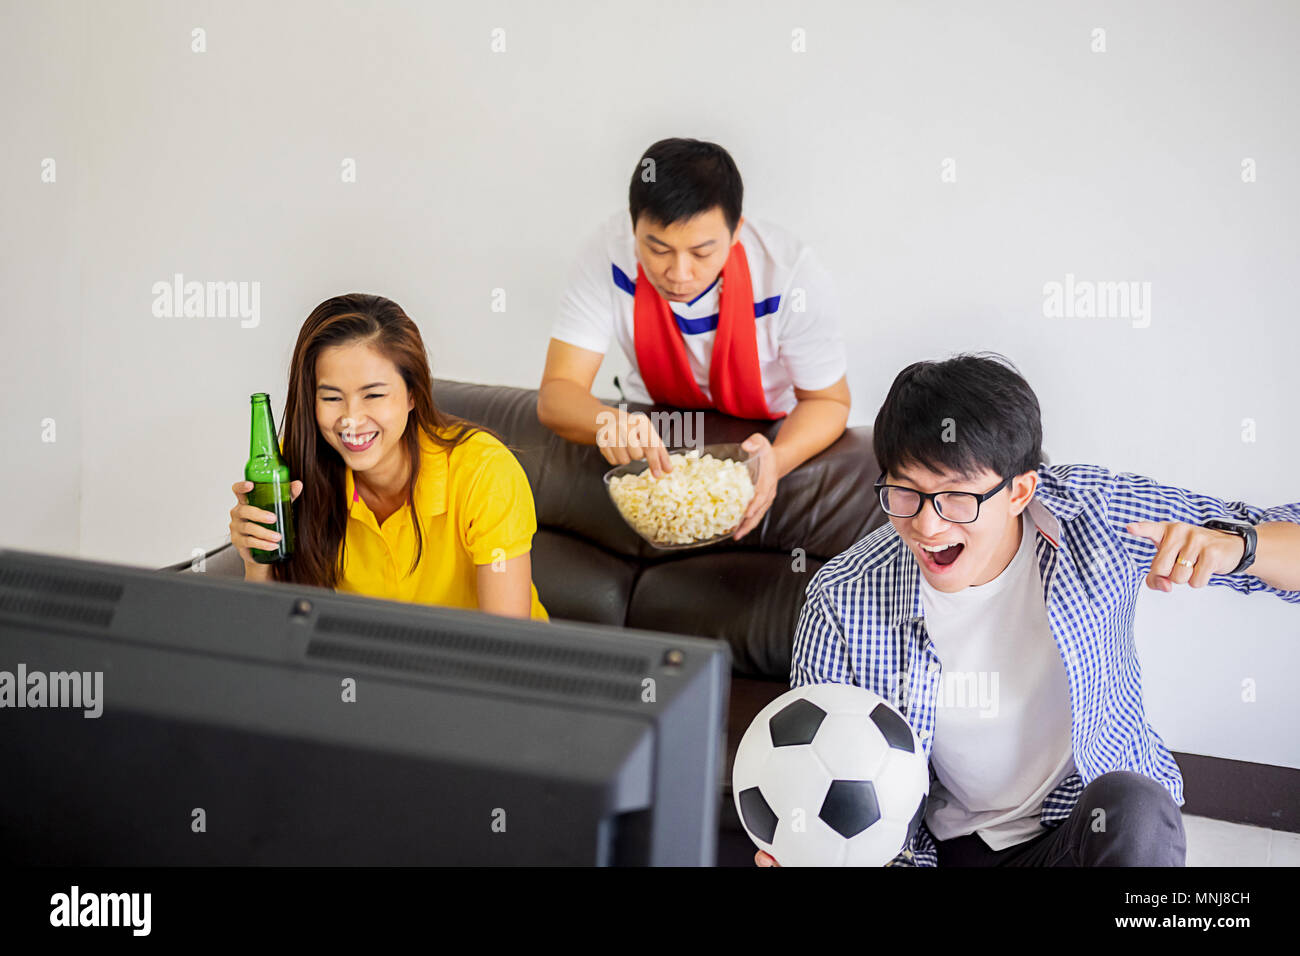 Watching Smart Tv Translation Of Football Game. Banco de Imagens Royalty  Free, Ilustrações, Imagens e Banco de Imagens. Image 59338018.